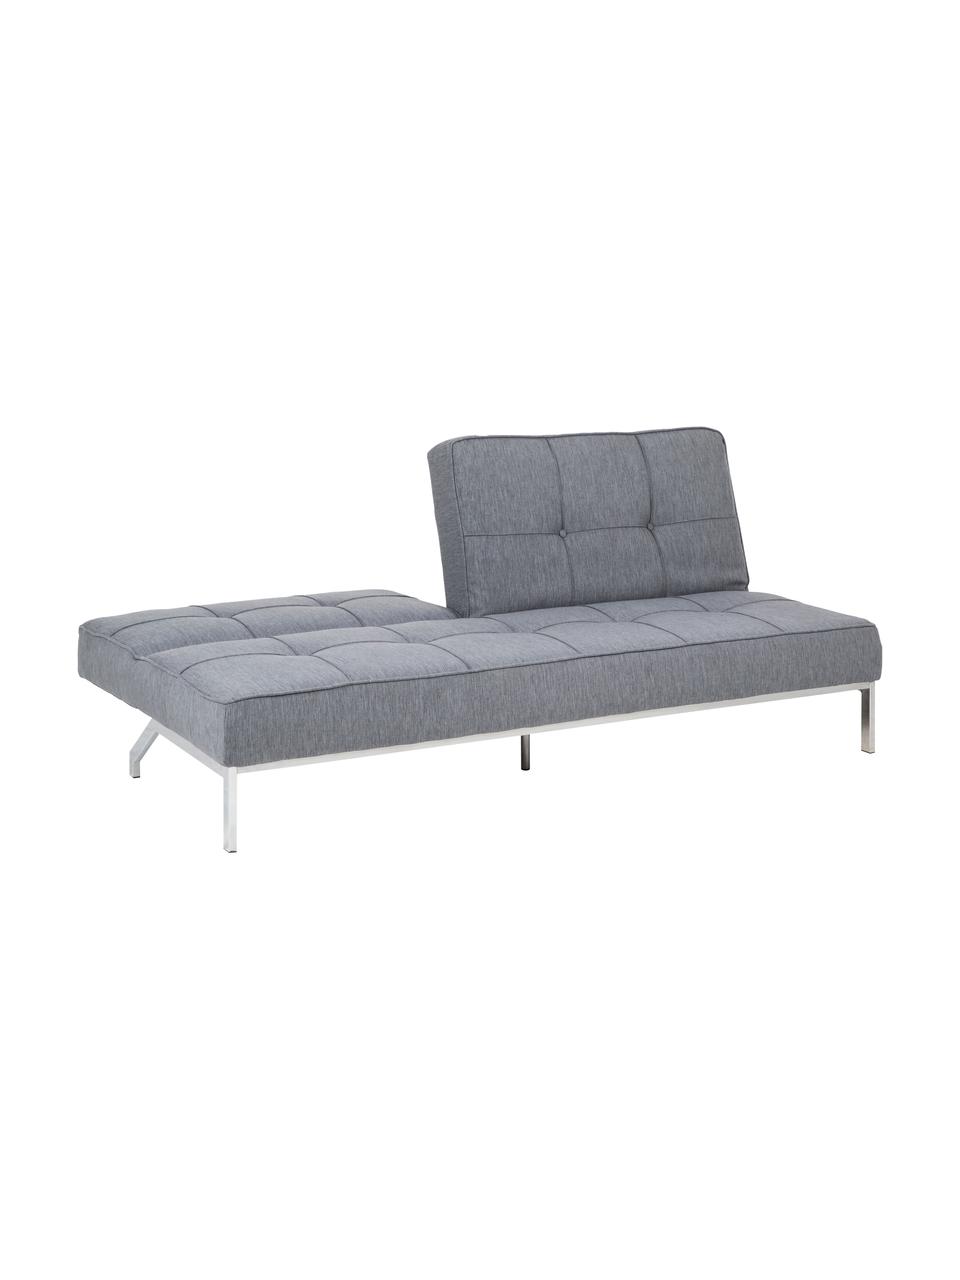 Sofa rozkładana Perugia, Tapicerka: poliester Dzięki tkaninie, Nogi: metal lakierowany, Jasny szary, S 198 x G 95 cm